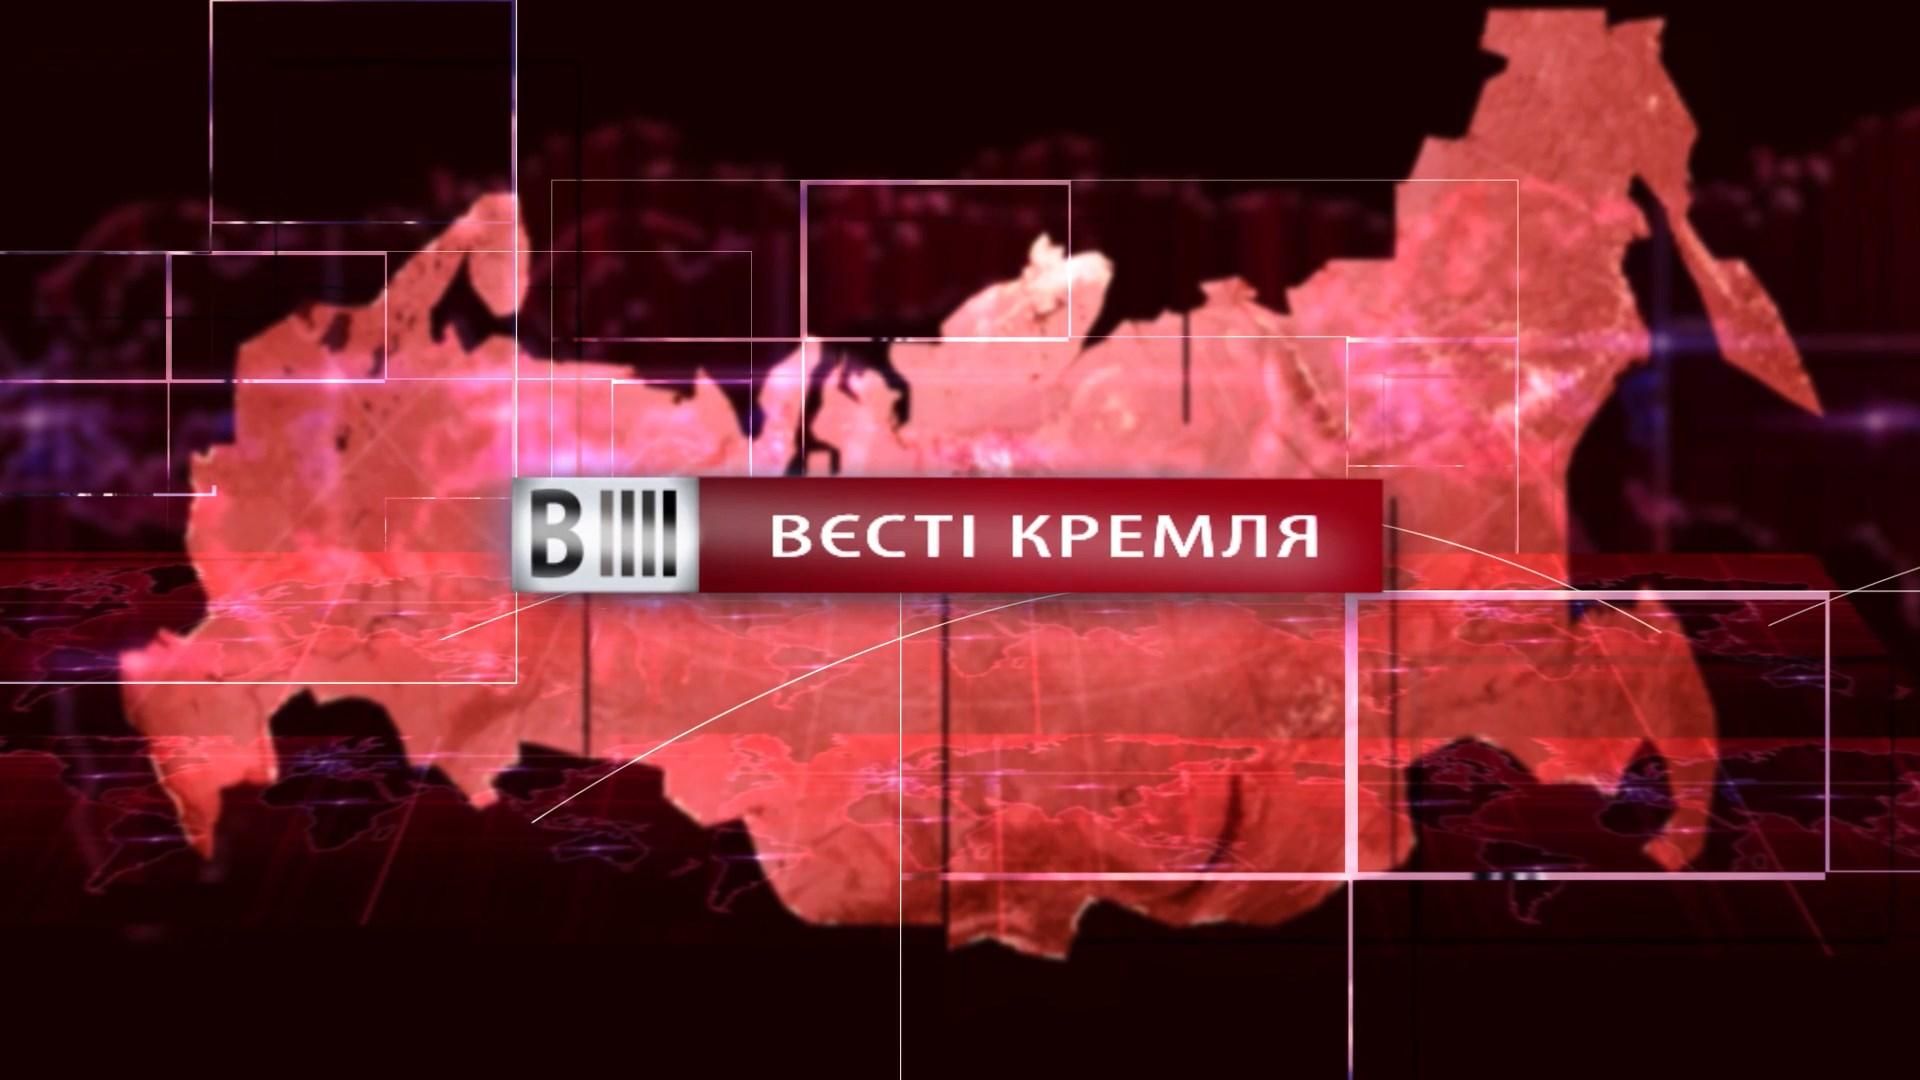 Смотрите "Вести Кремля". Кинореволюции в России. Месть с высоким градусом